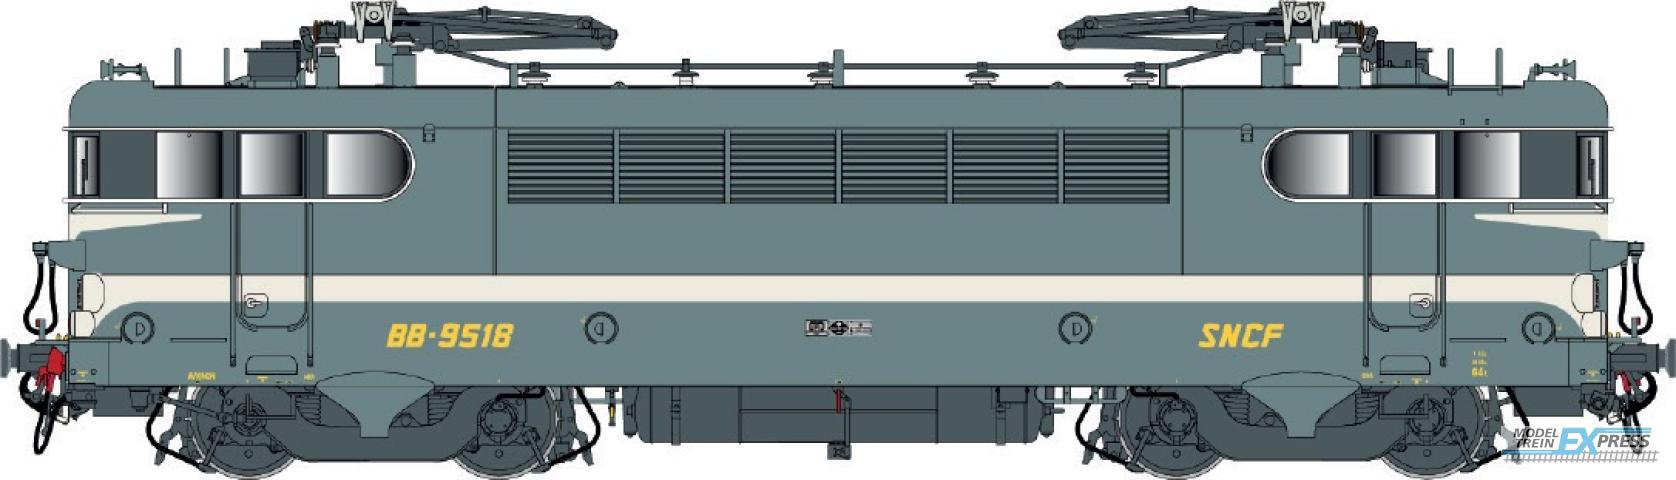 LS Models 10227S BB 9400, groen blauw, brede witte lijn, geschilderde snor, vet logo  /  Ep. IV  /  SNCF  /  HO  /  DC SOUND  /  1 P.